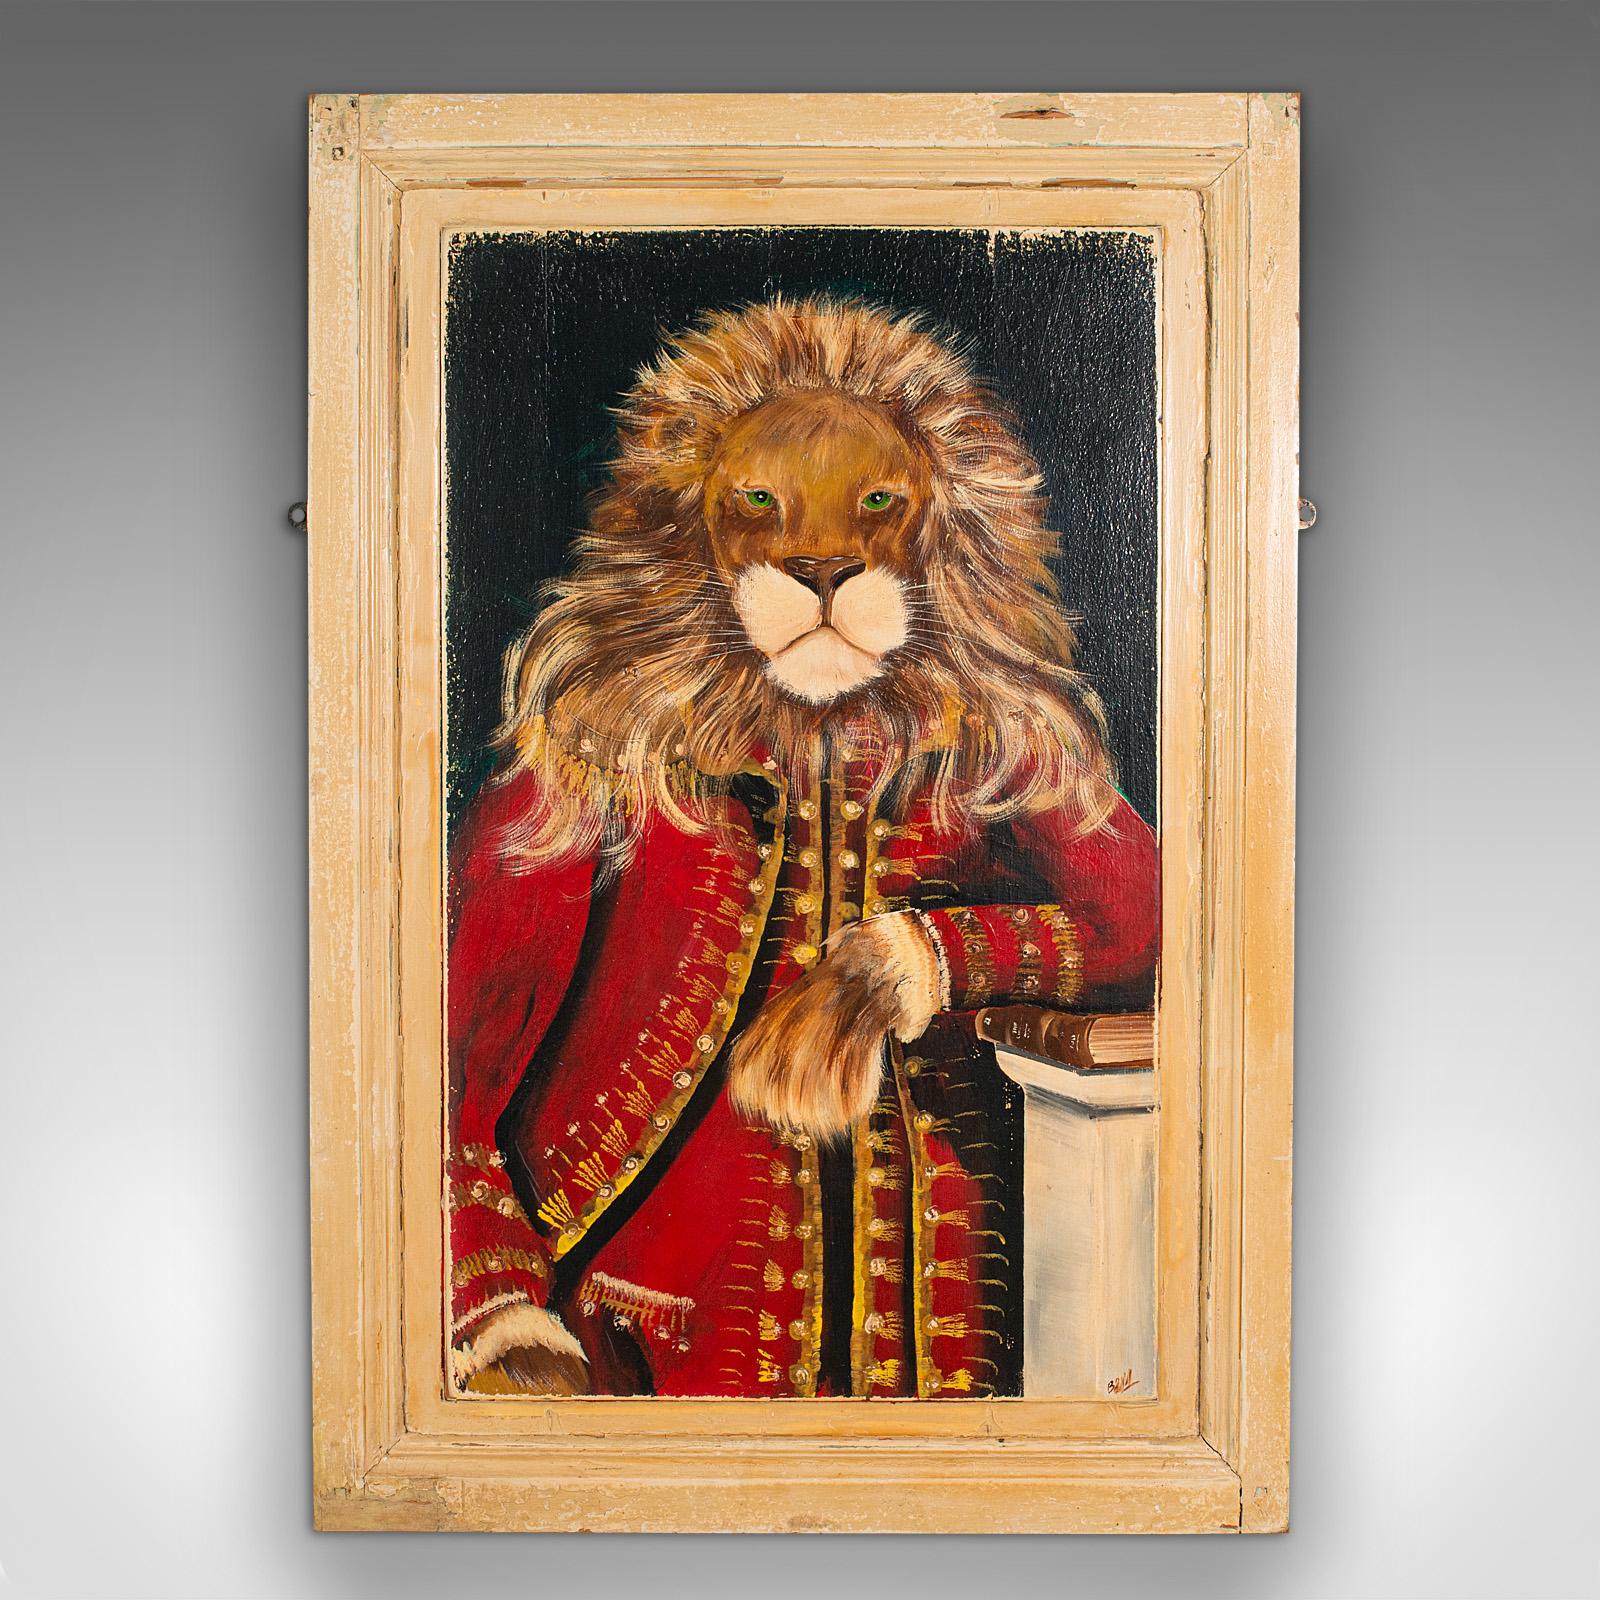 Il s'agit d'un portrait de lion vintage. Une peinture à l'huile anglaise sur du pin victorien récupéré, datant de la fin du 20e siècle, vers 1970.

Attrayant et charmant, idéal pour les collectionneurs d'anthropomorphisme.
Présente une patine